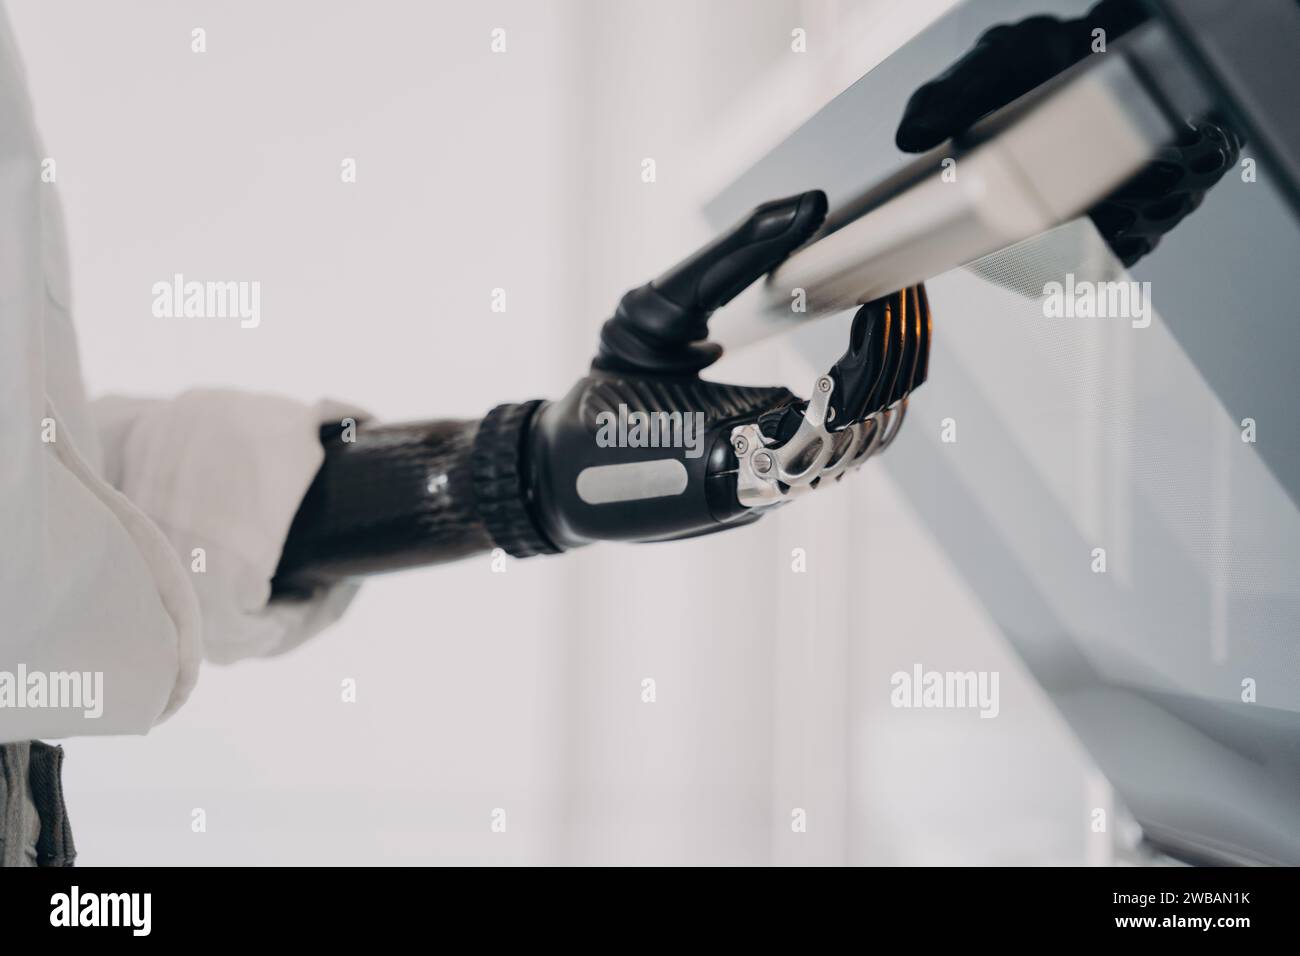 Précision et technologie convergent alors qu’une main bionique actionne un panneau de commande, symbolisant la nouvelle ère de l’intégration homme-machine Banque D'Images